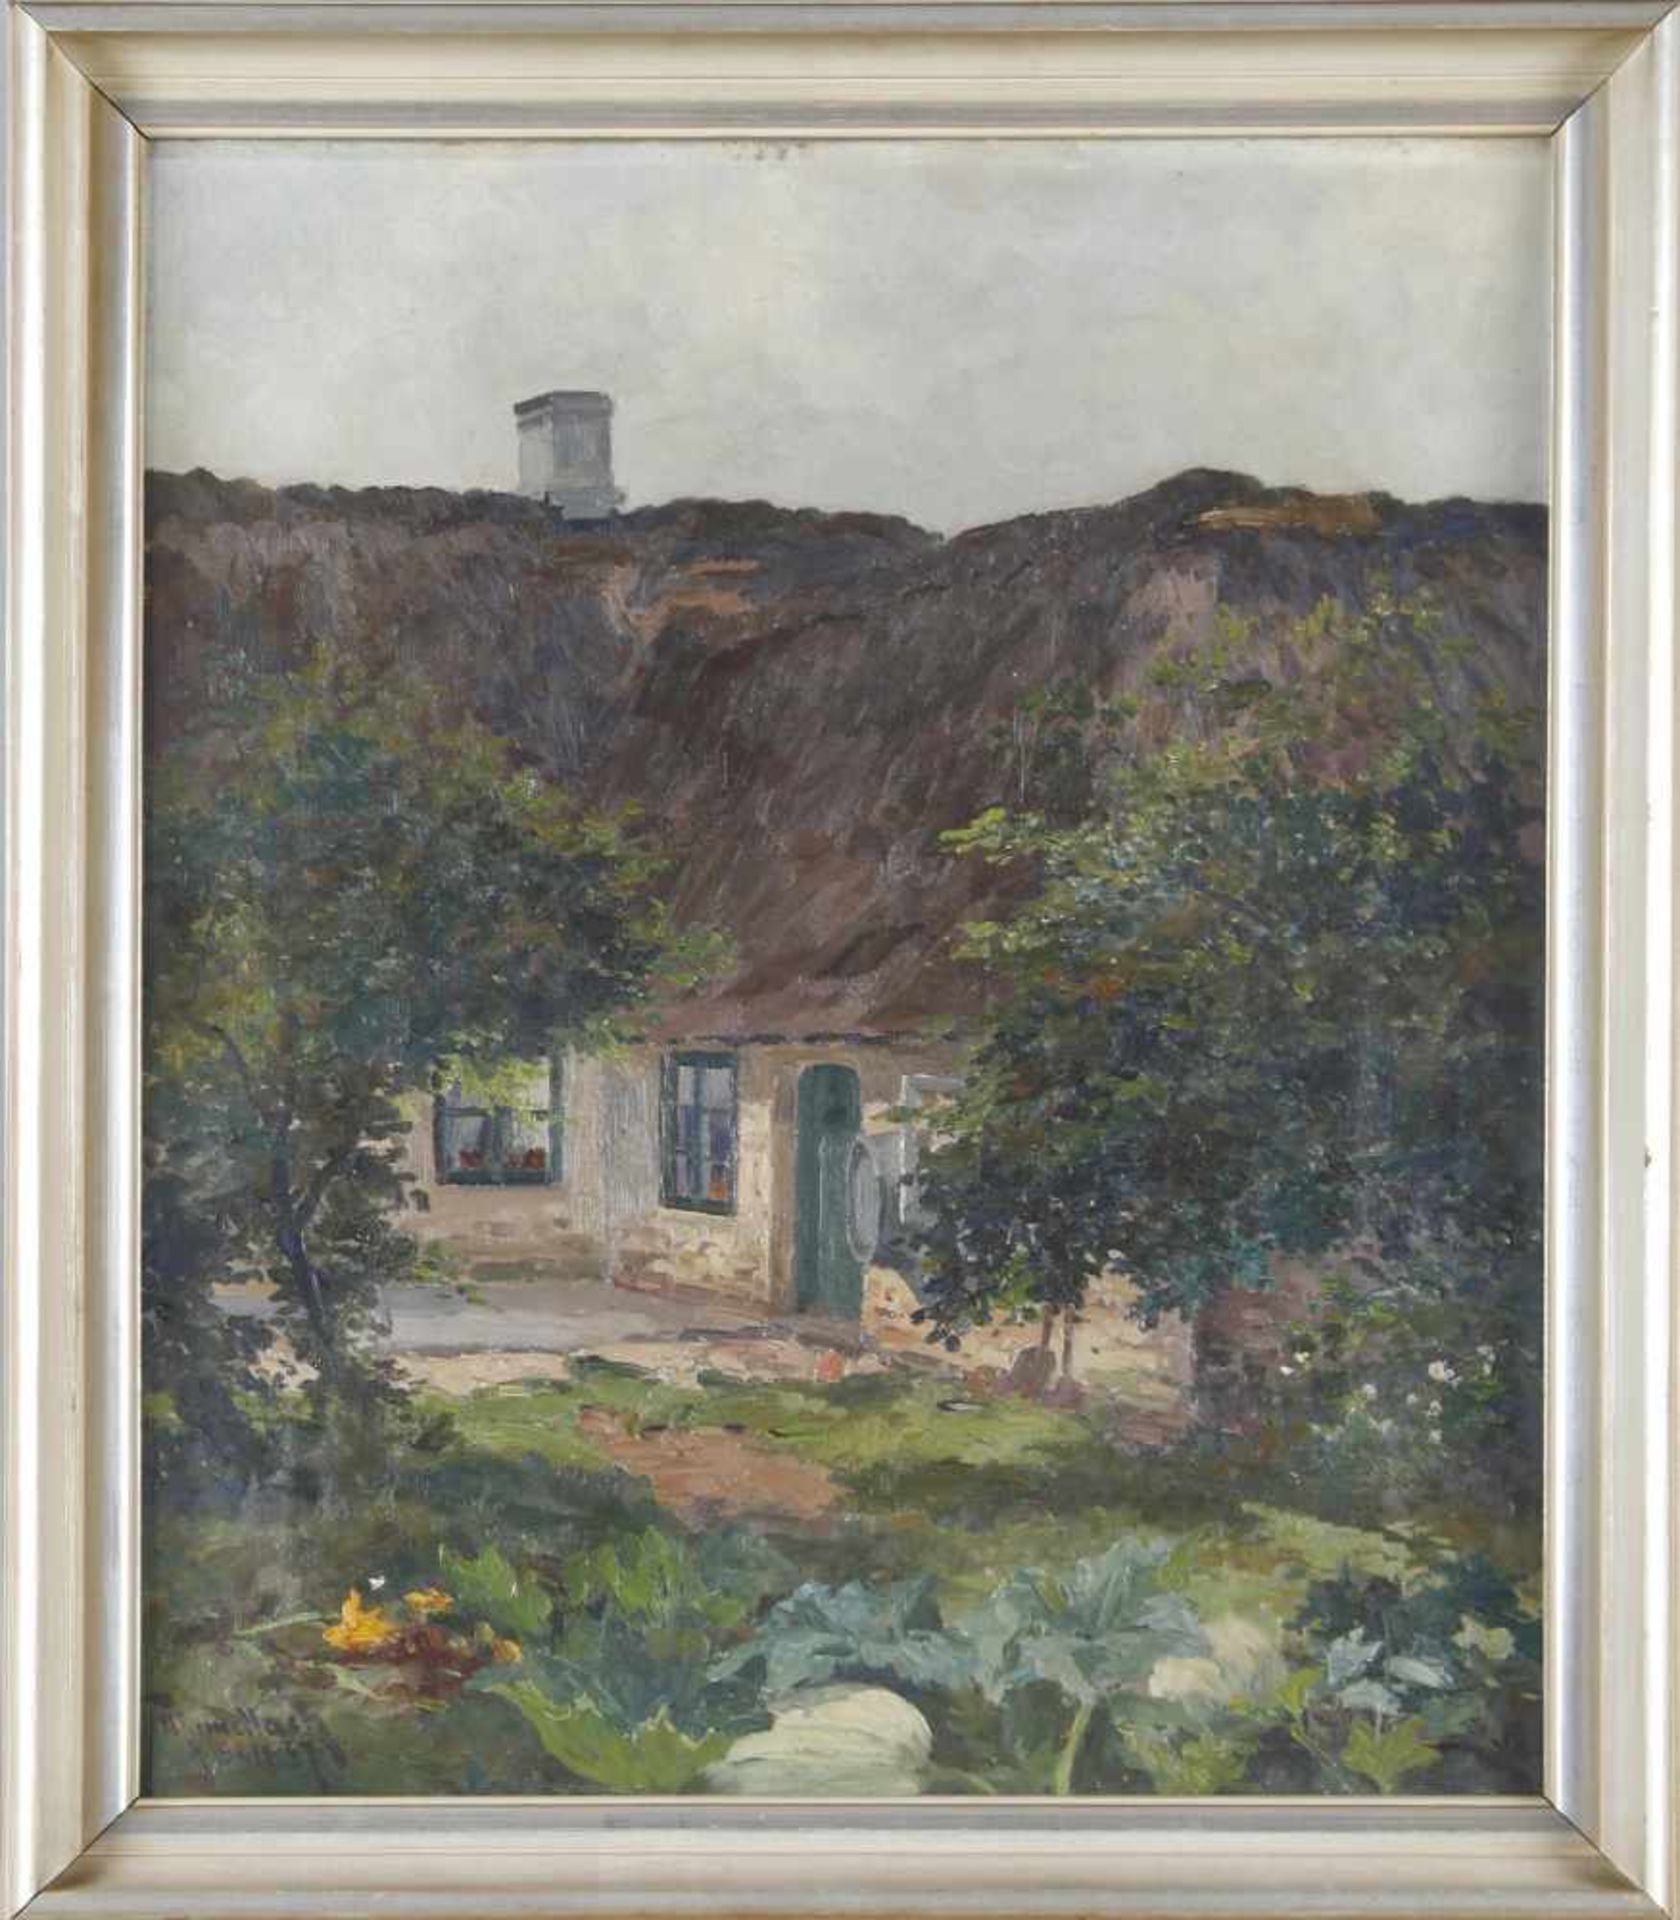 Henry Gundlach (dt. Maler, 1. H. 20. Jh.)Blick auf Bauerngehöft zwischen Bäumen, 1939, Öl auf